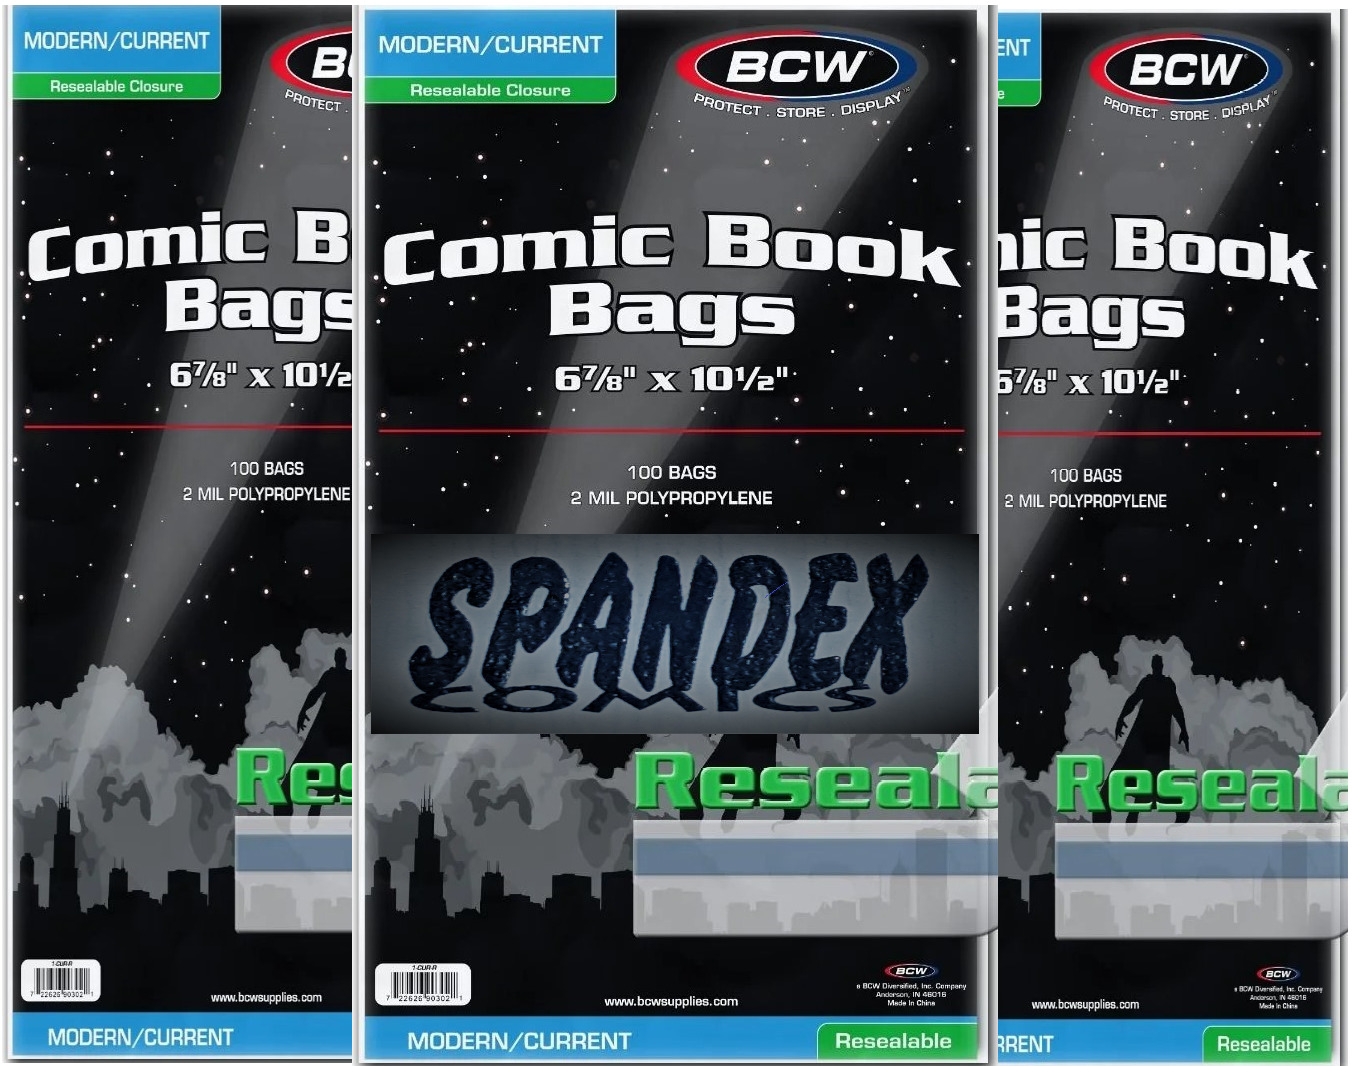 300 - BCW Current Modern Resealable 2-Mil Polypropylene Comic Book Bags